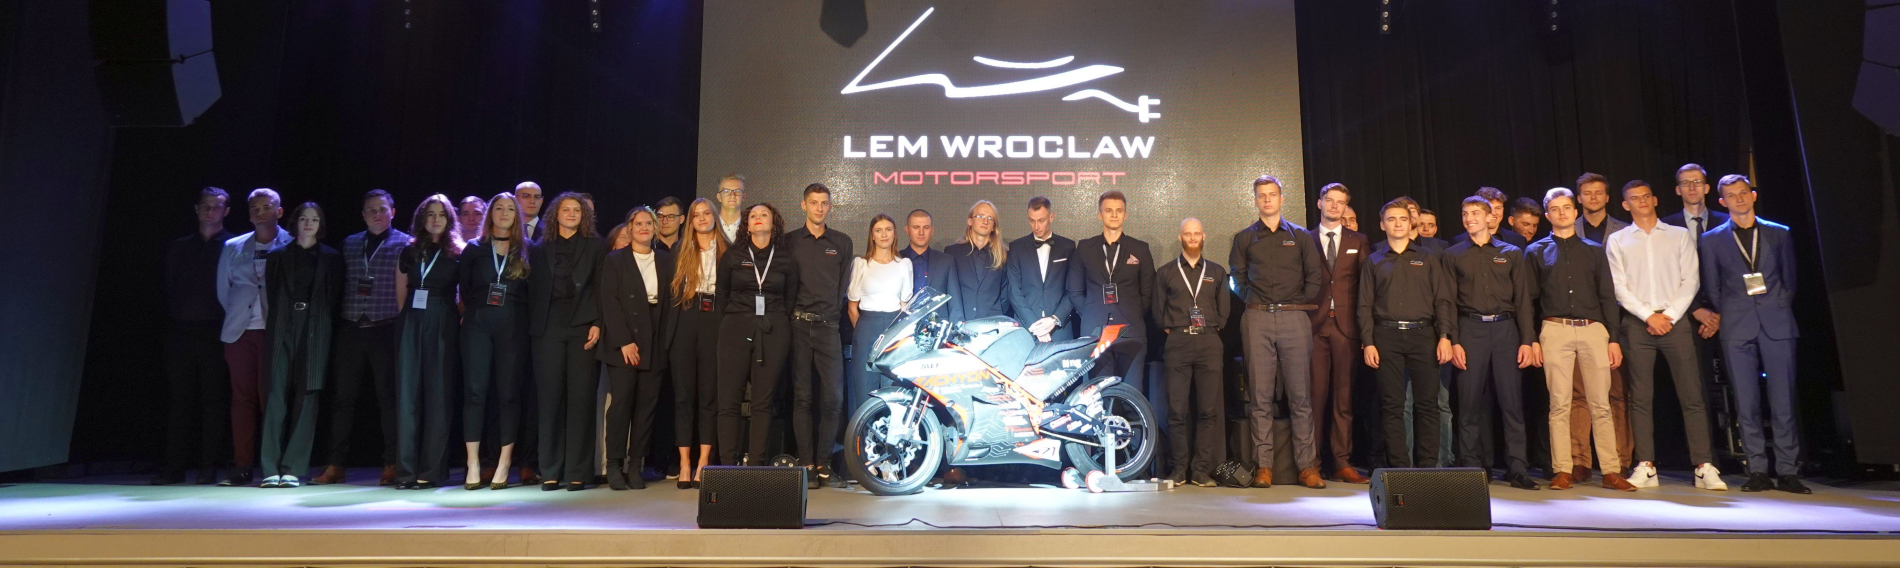 Zespół LEM Wrocław Motorsport - zdjęcie